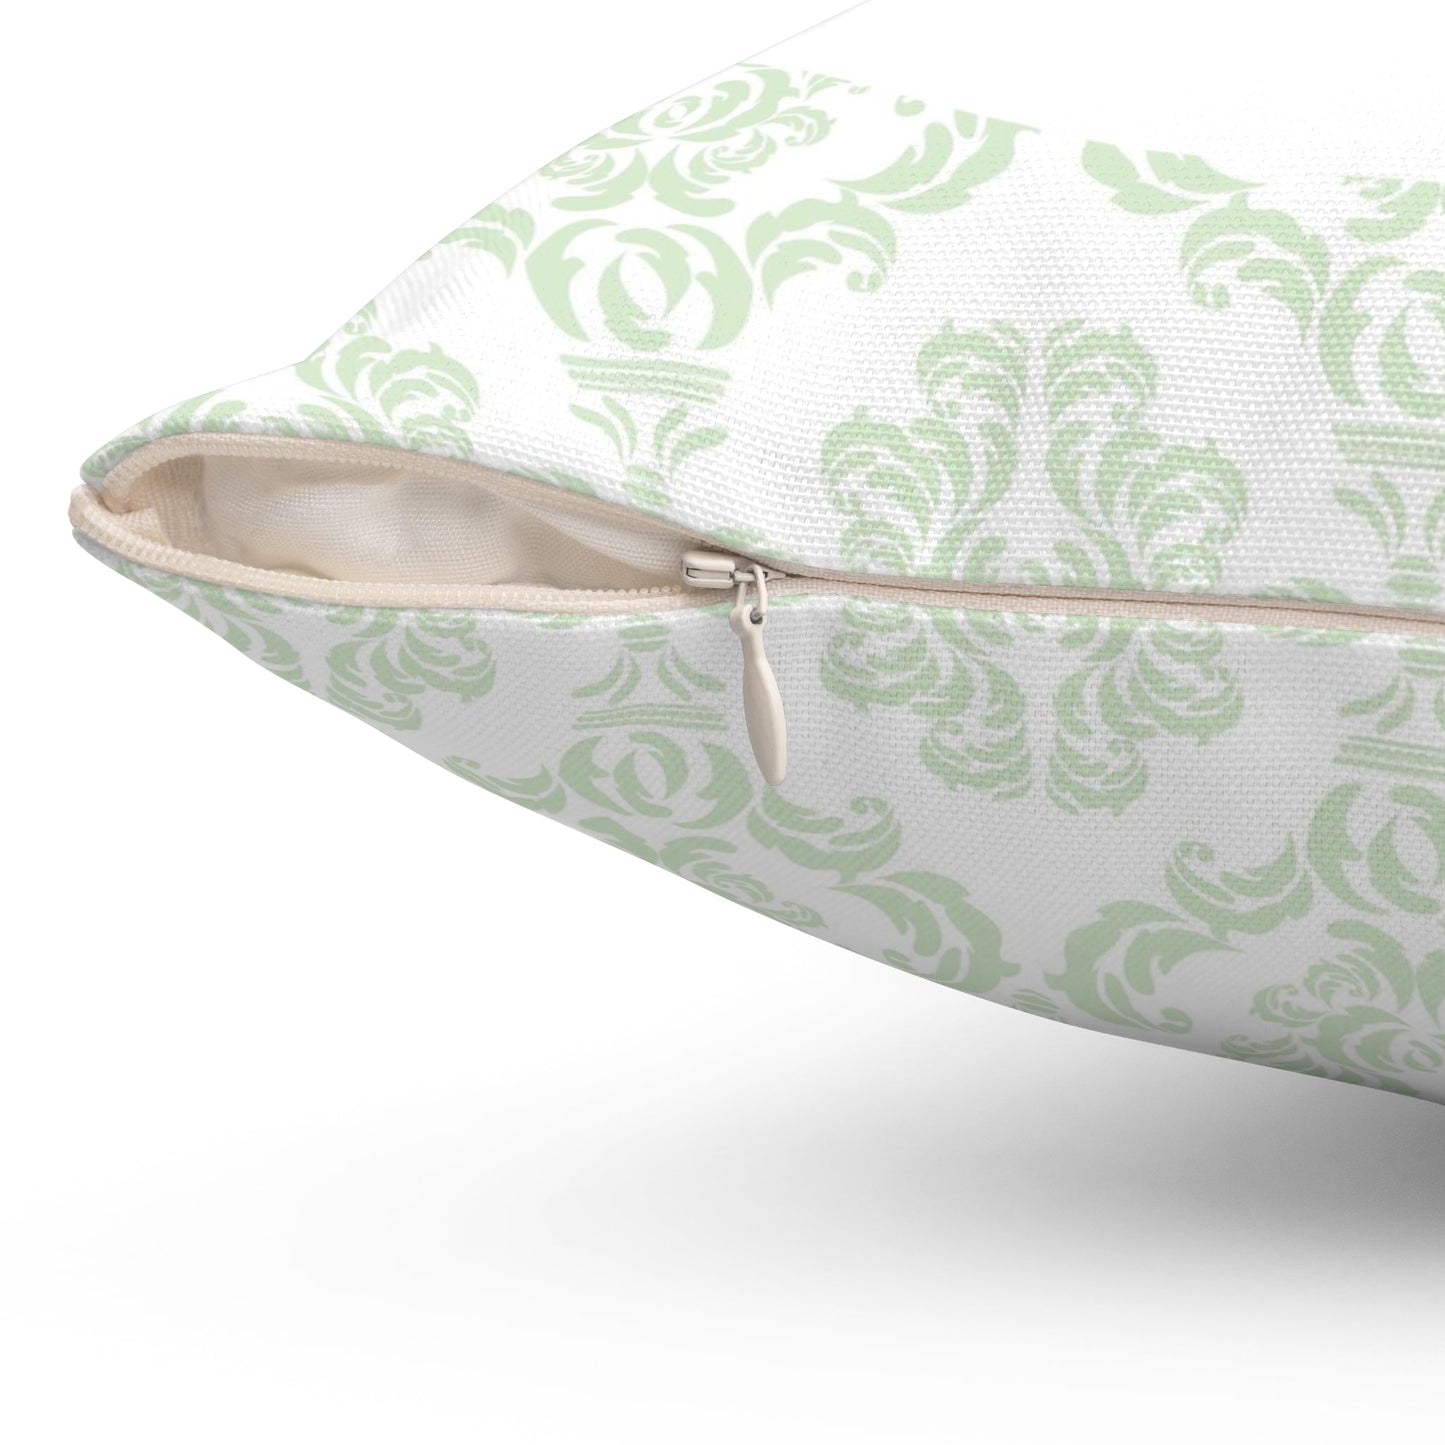 Cute Garden Mouse Pillow #2, Throw Pillow, Elegant Clean Lines, Fresh Green Pillow - FlooredByArt